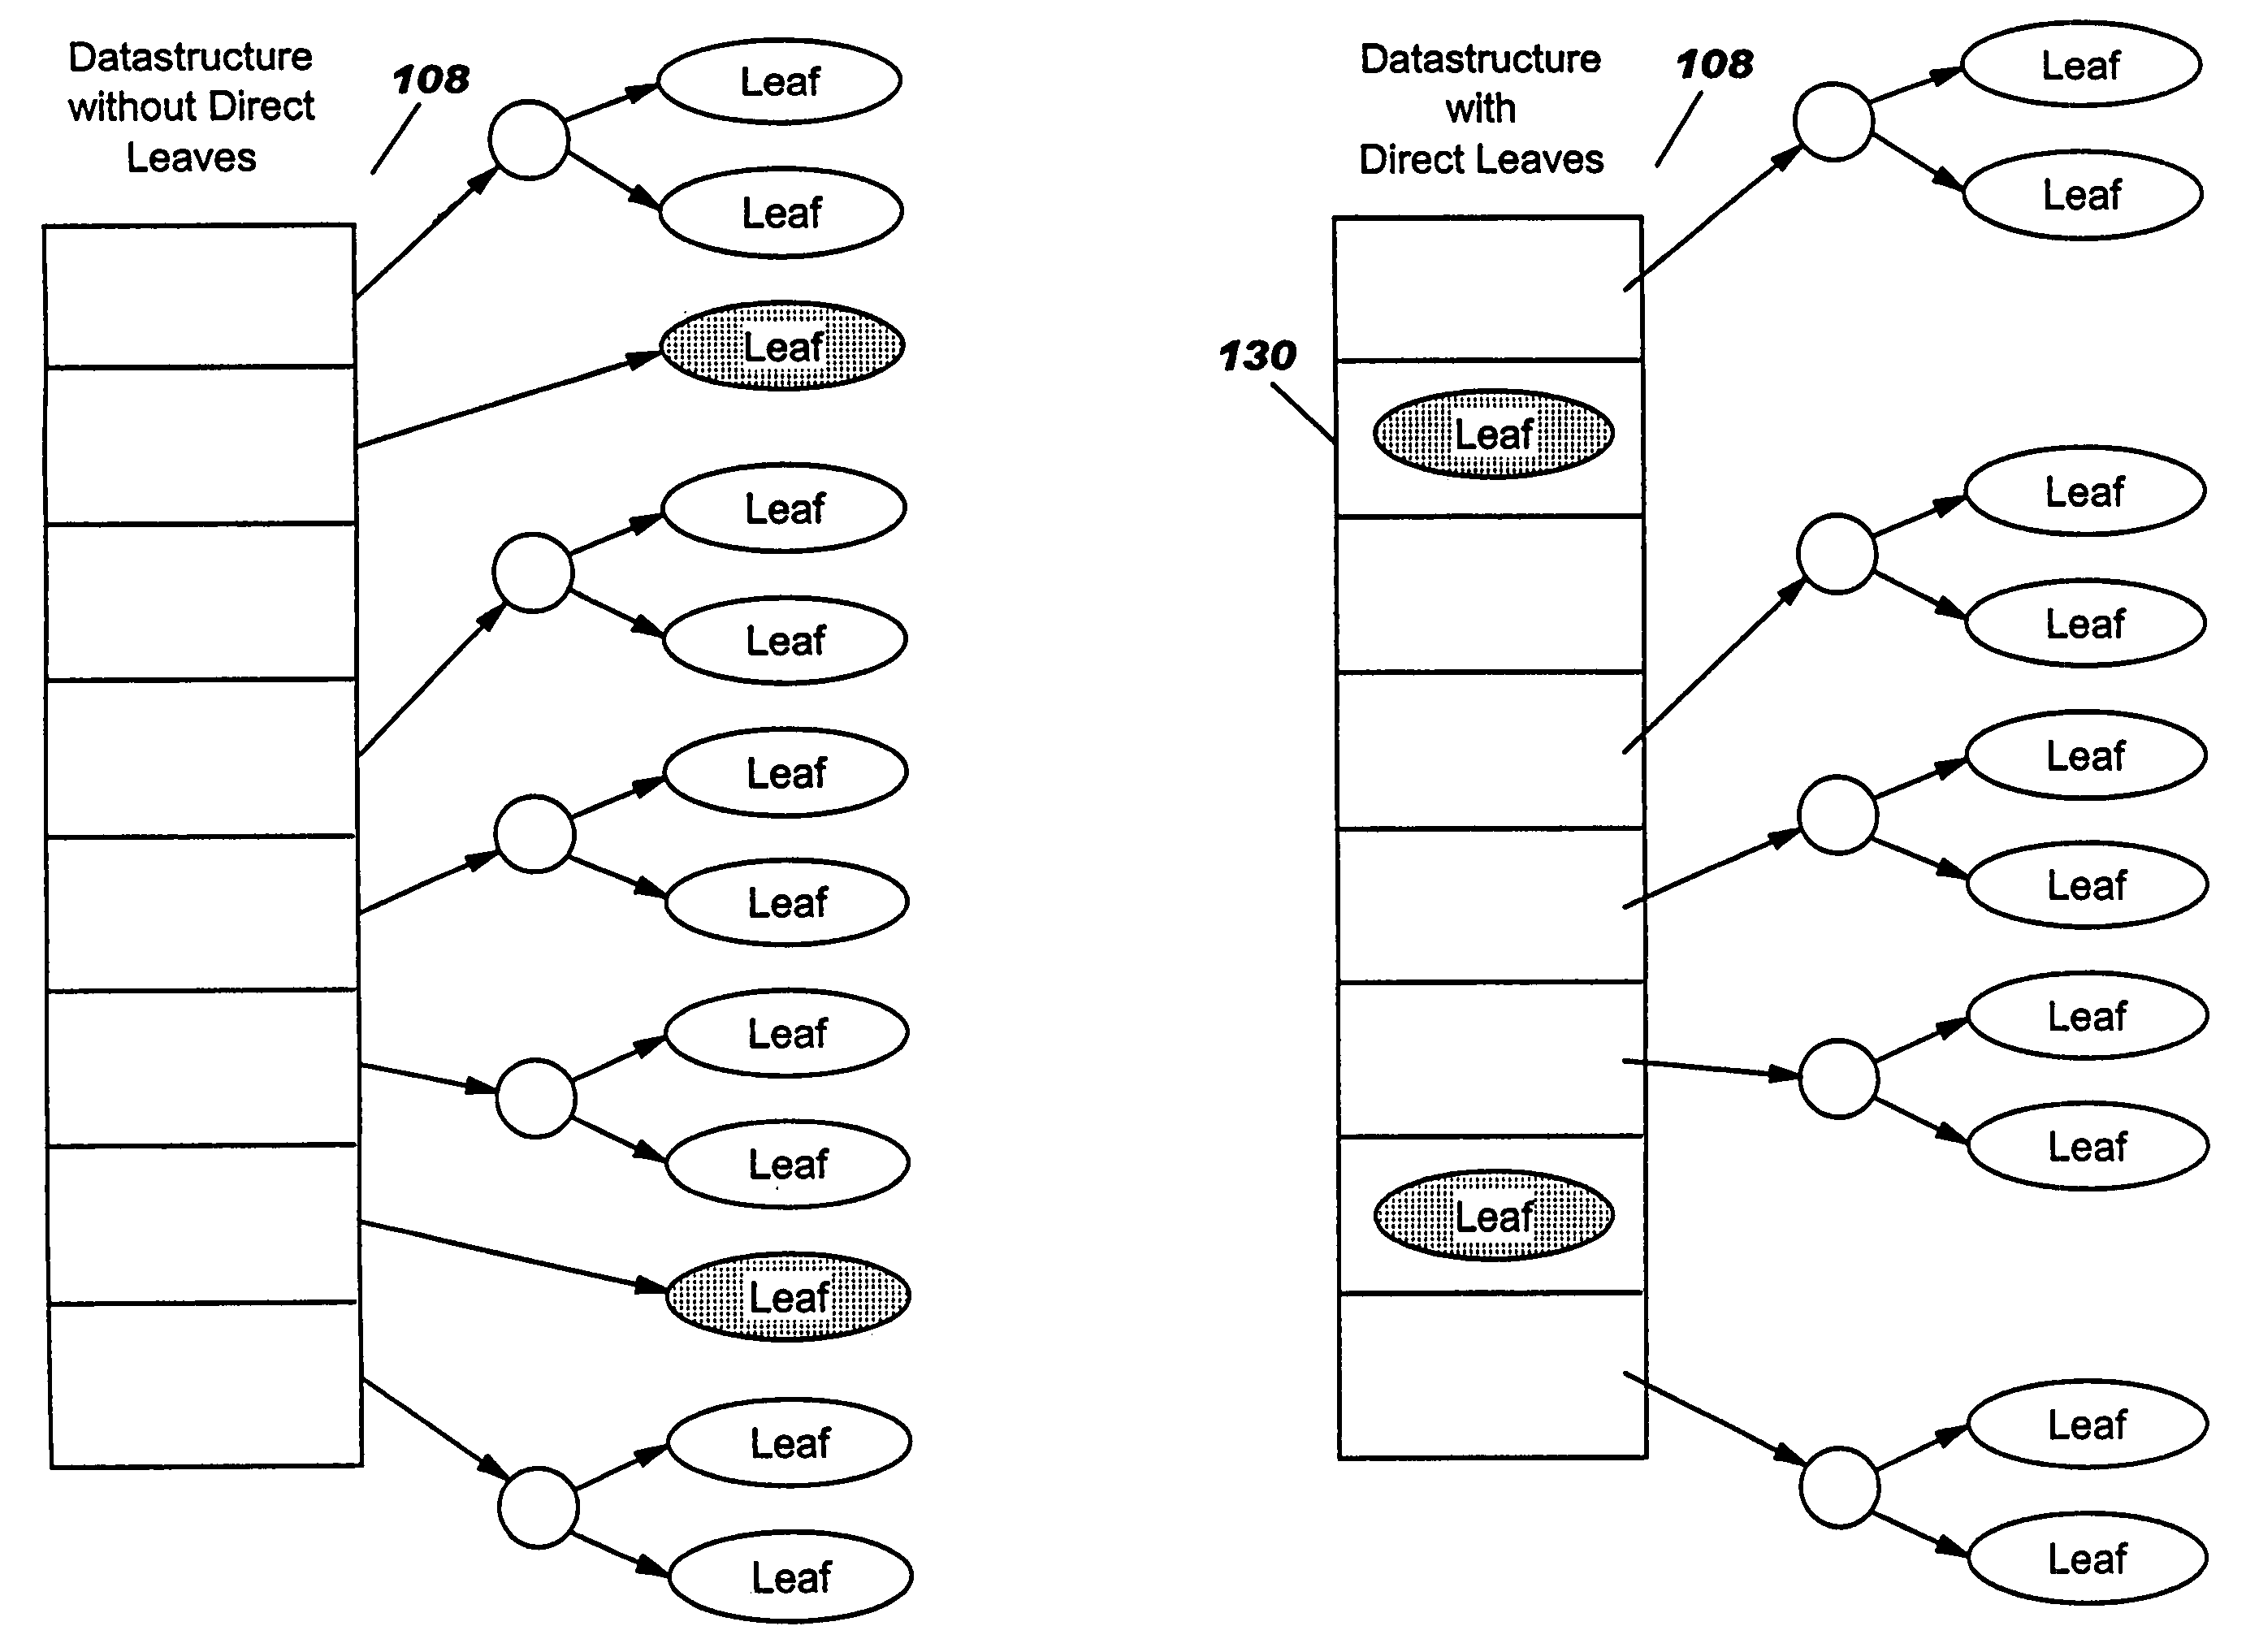 Longest prefix match (LPM) algorithm implementation for a network processor